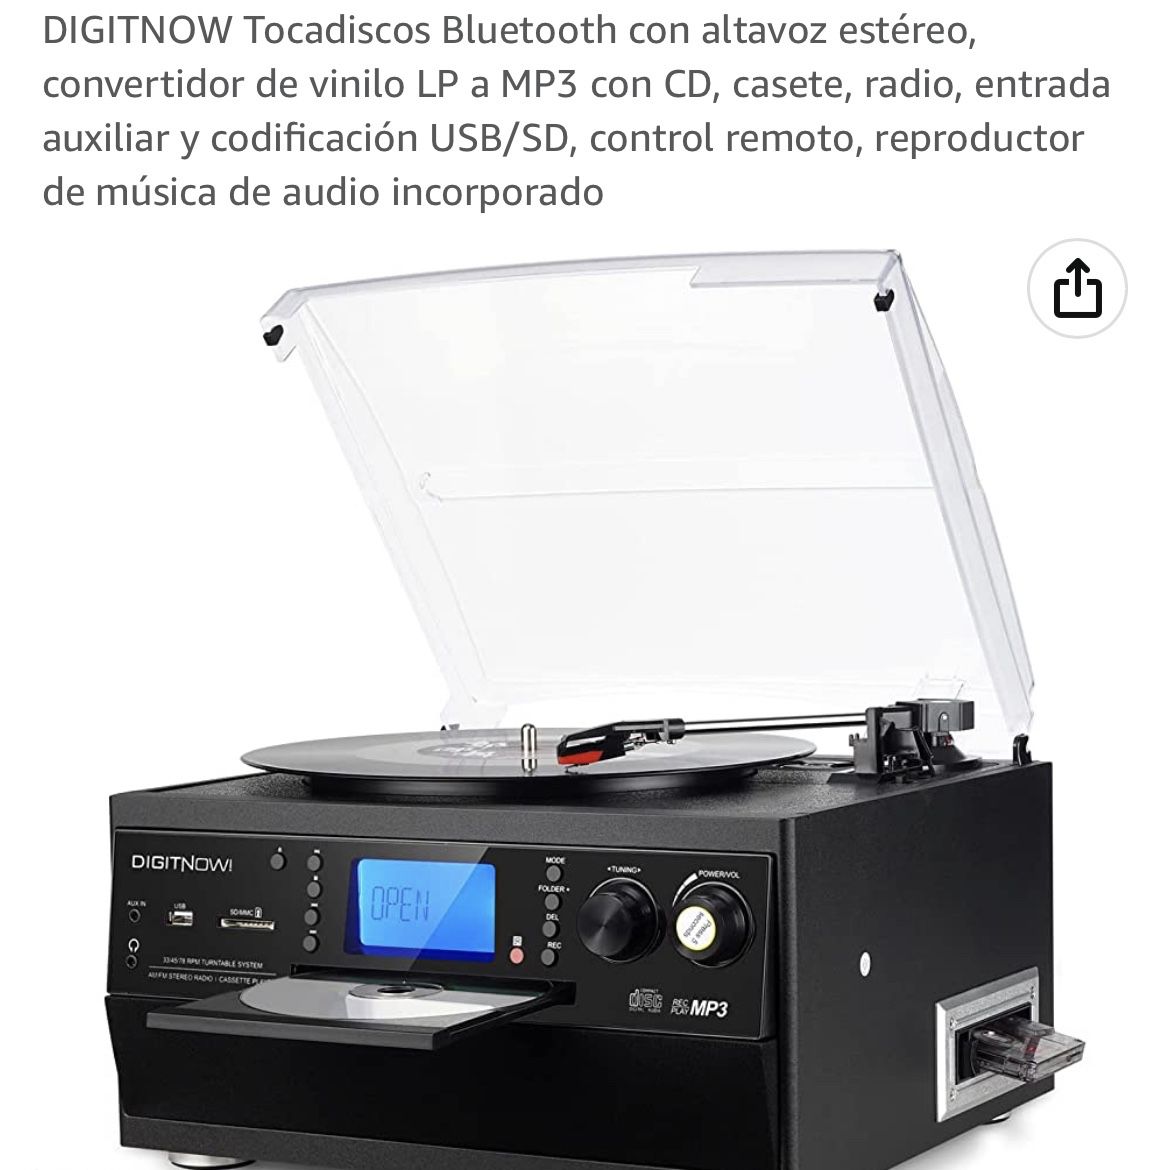 DIGITNOW Tocadiscos Bluetooth con altavoz estéreo, convertidor de vinilo LP  a MP3 con CD, casete, radio, entrada auxiliar y codificación USB/SD